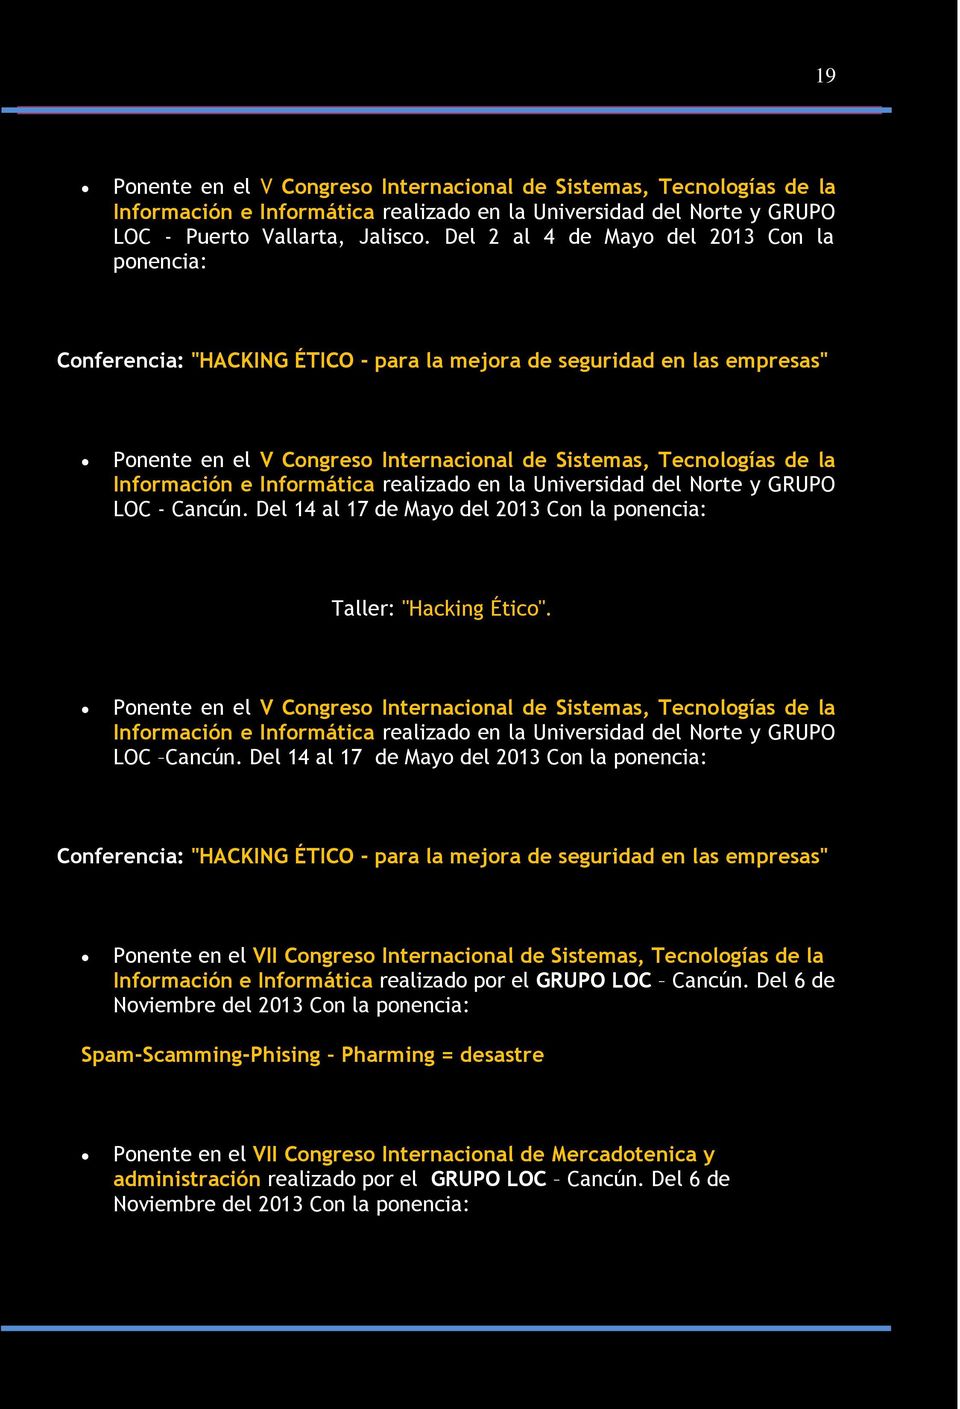 Información e Informática realizado en la Universidad del Norte y GRUPO LOC - Cancún. Del 14 al 17 de Mayo del 2013 Con la ponencia: Taller: "Hacking Ético".